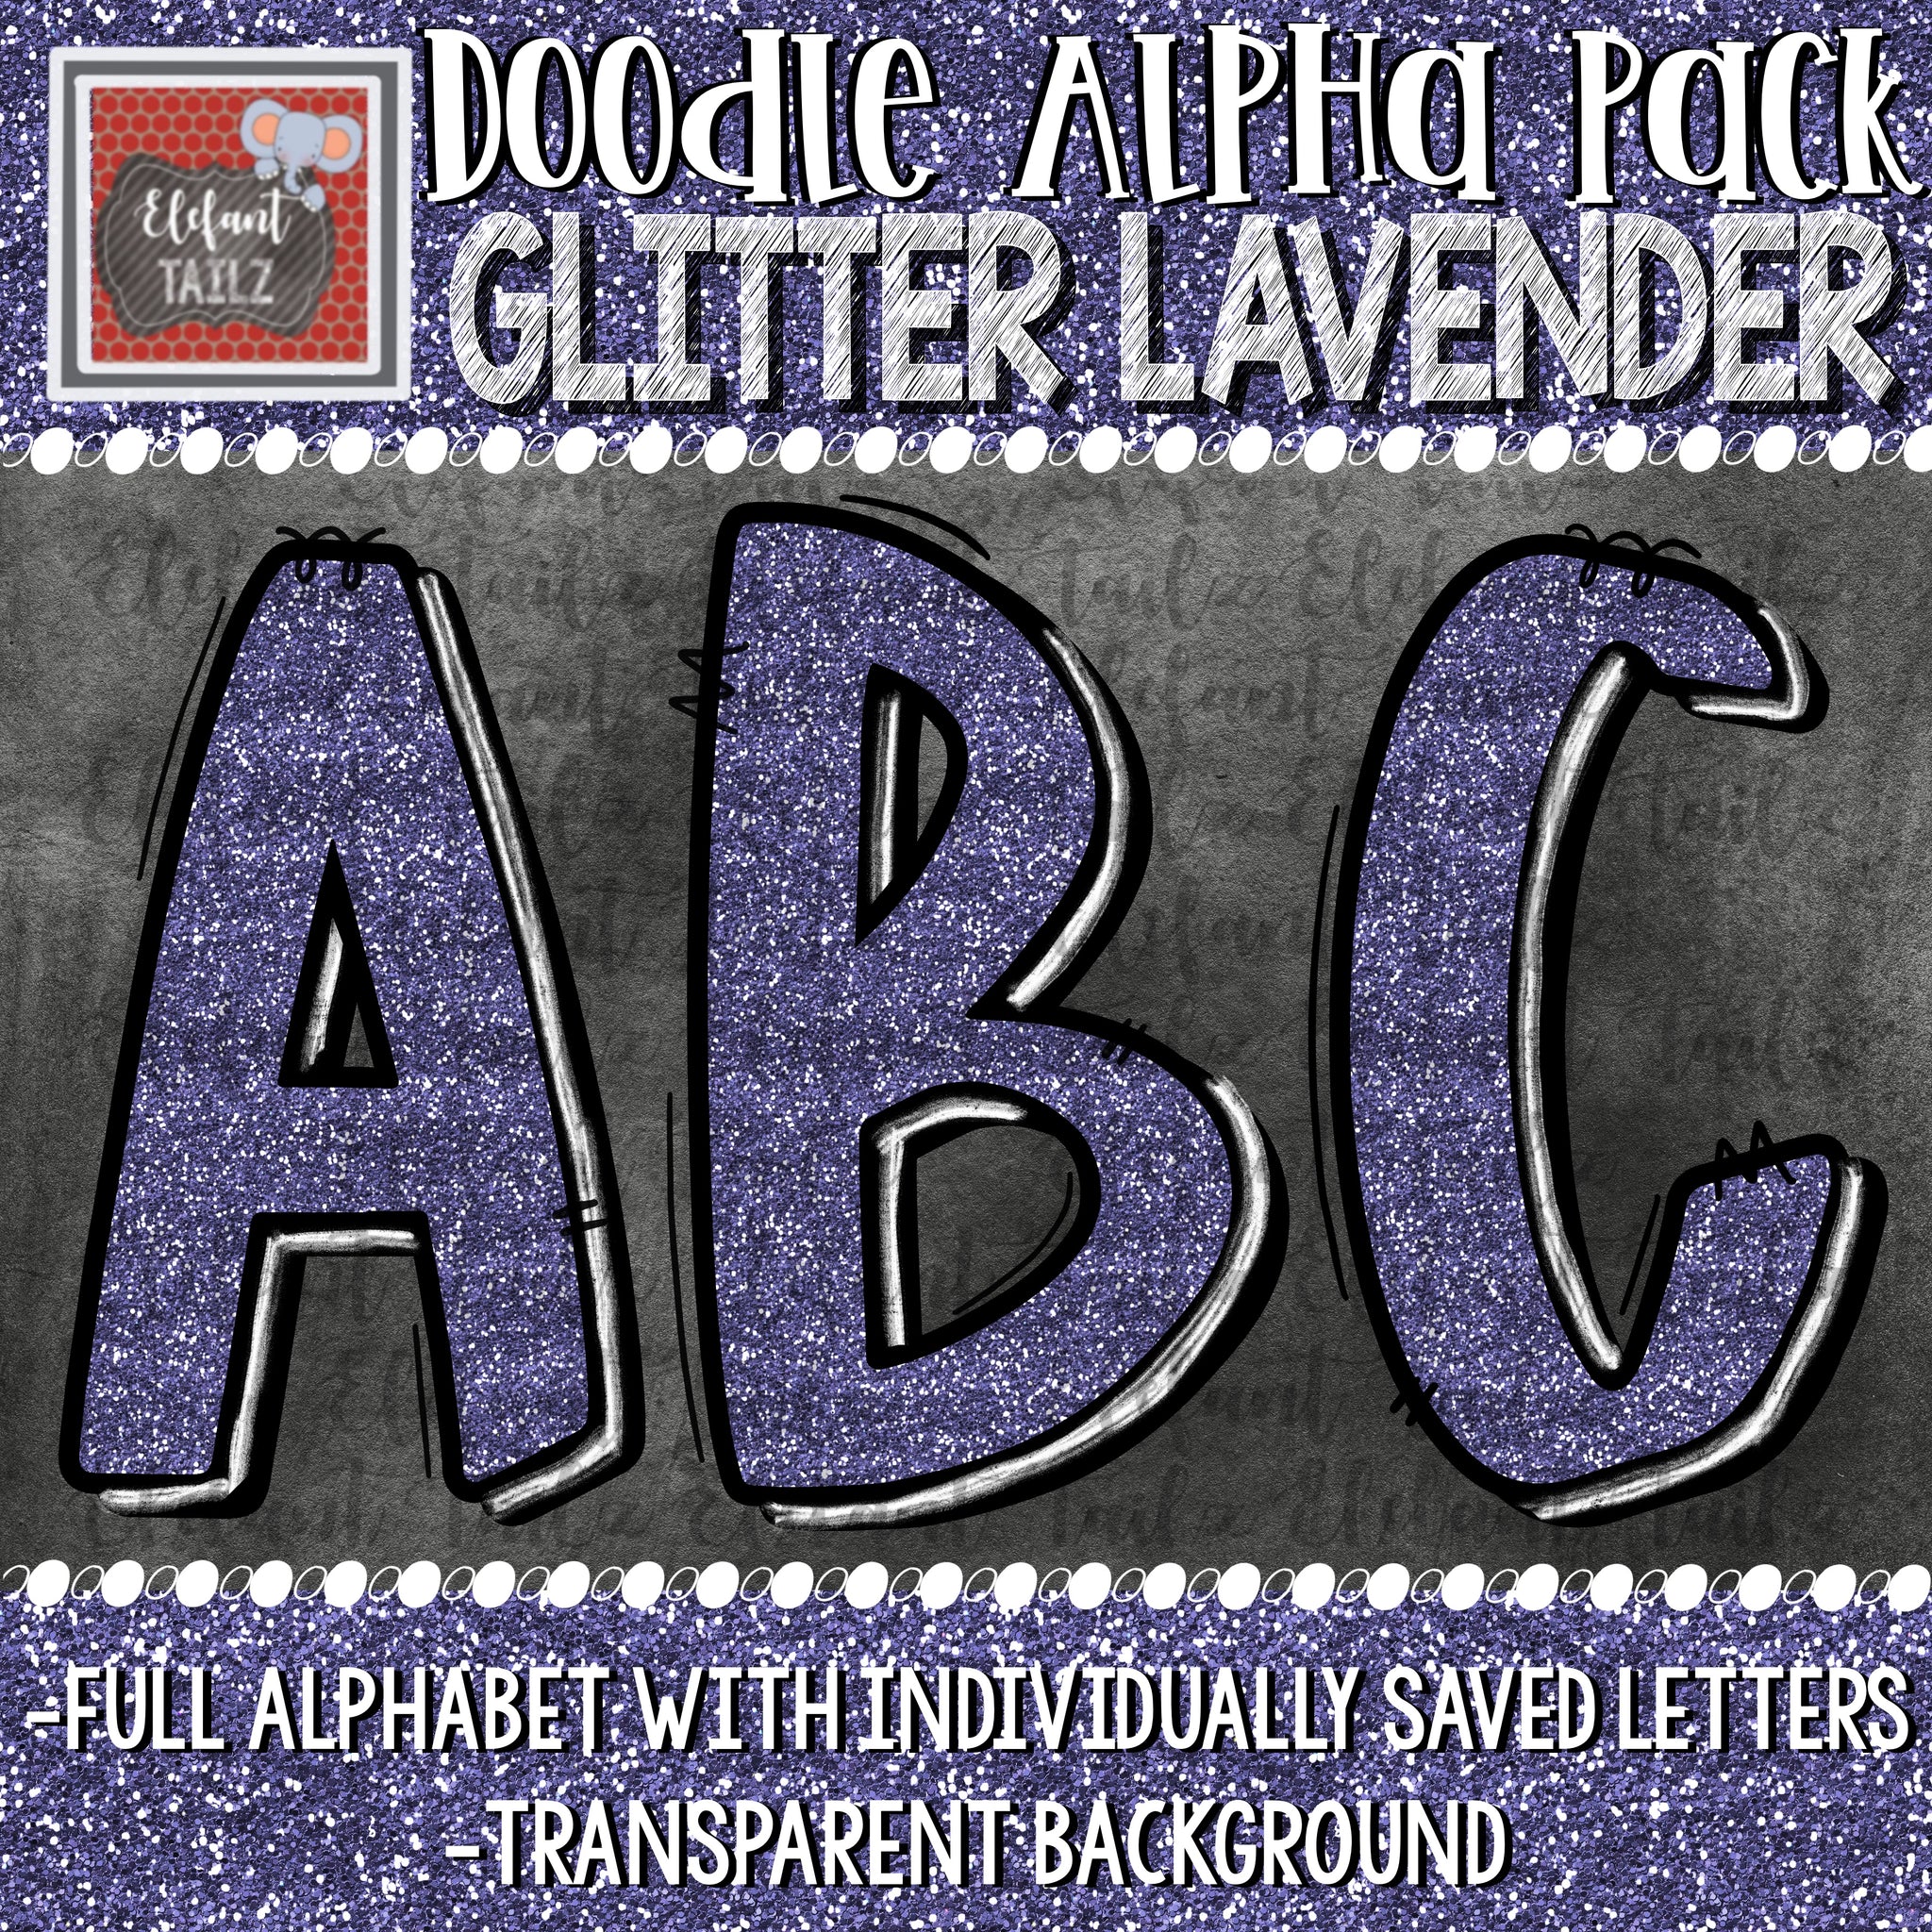 Doodle Alpha - Glitter Lavender